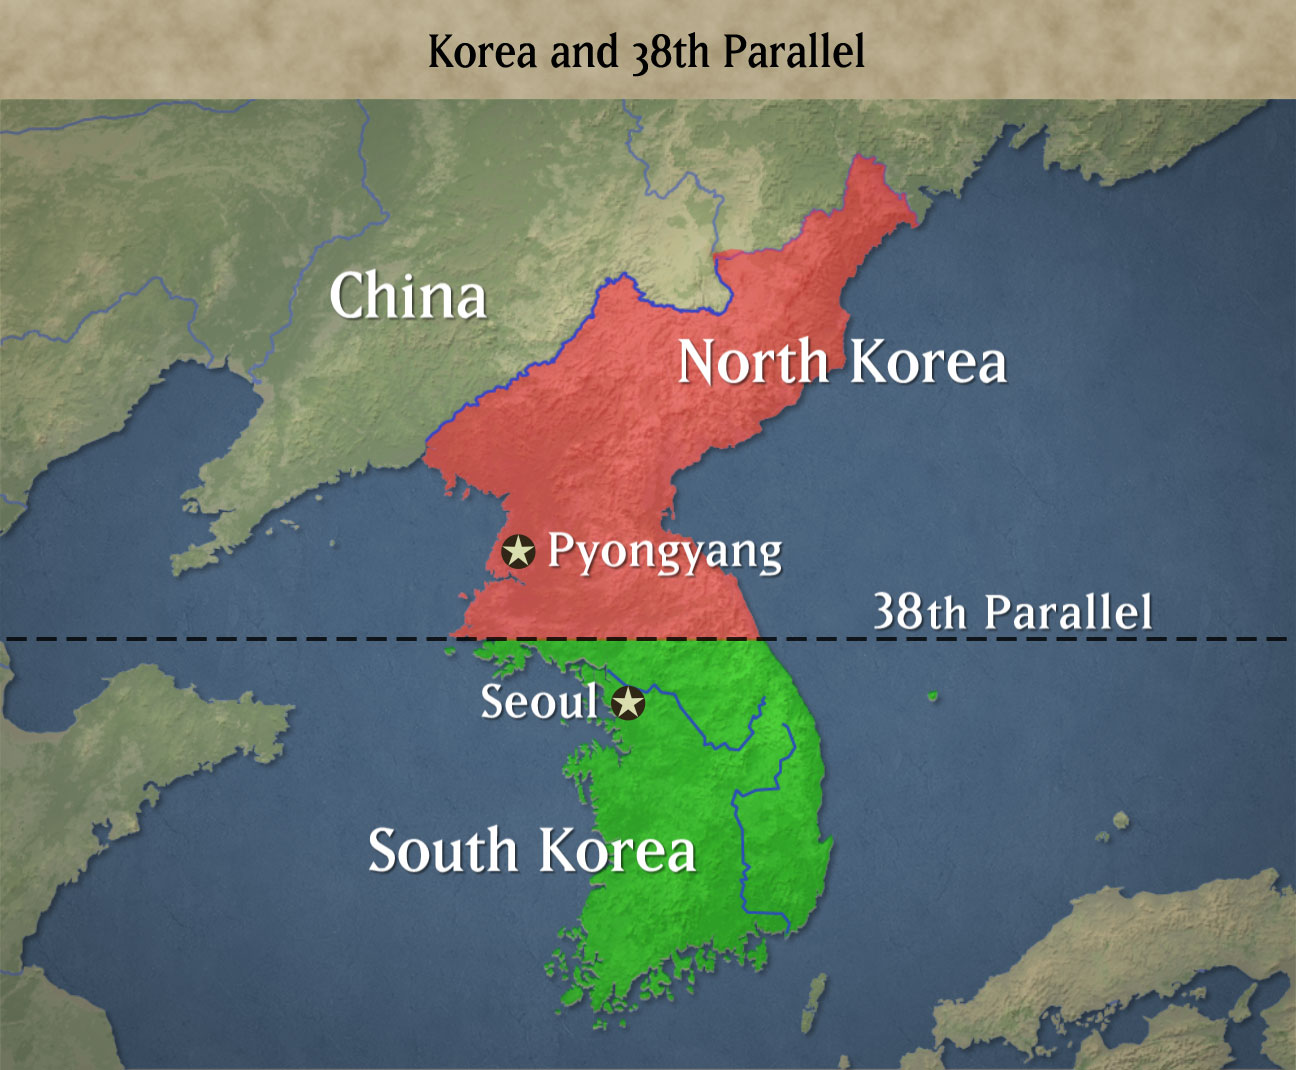 La storia della Corea: perché le due Coree sono divise?